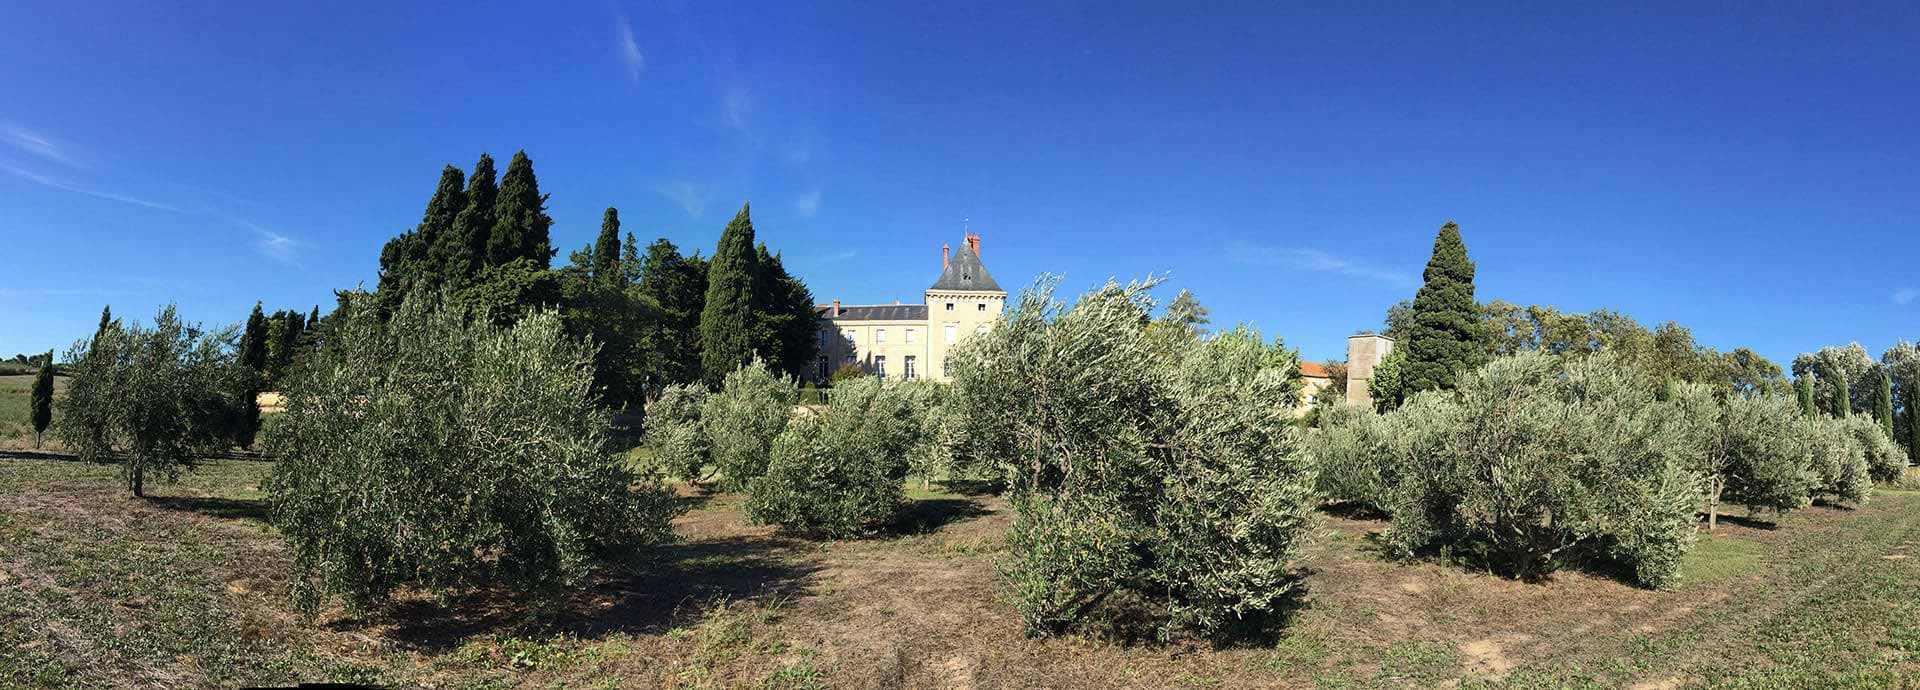 Descubra la biodiversidad de las 120 hectáreas de la Finca de la Vernède, alquiler de habitaciones para huéspedes cerca de Béziers